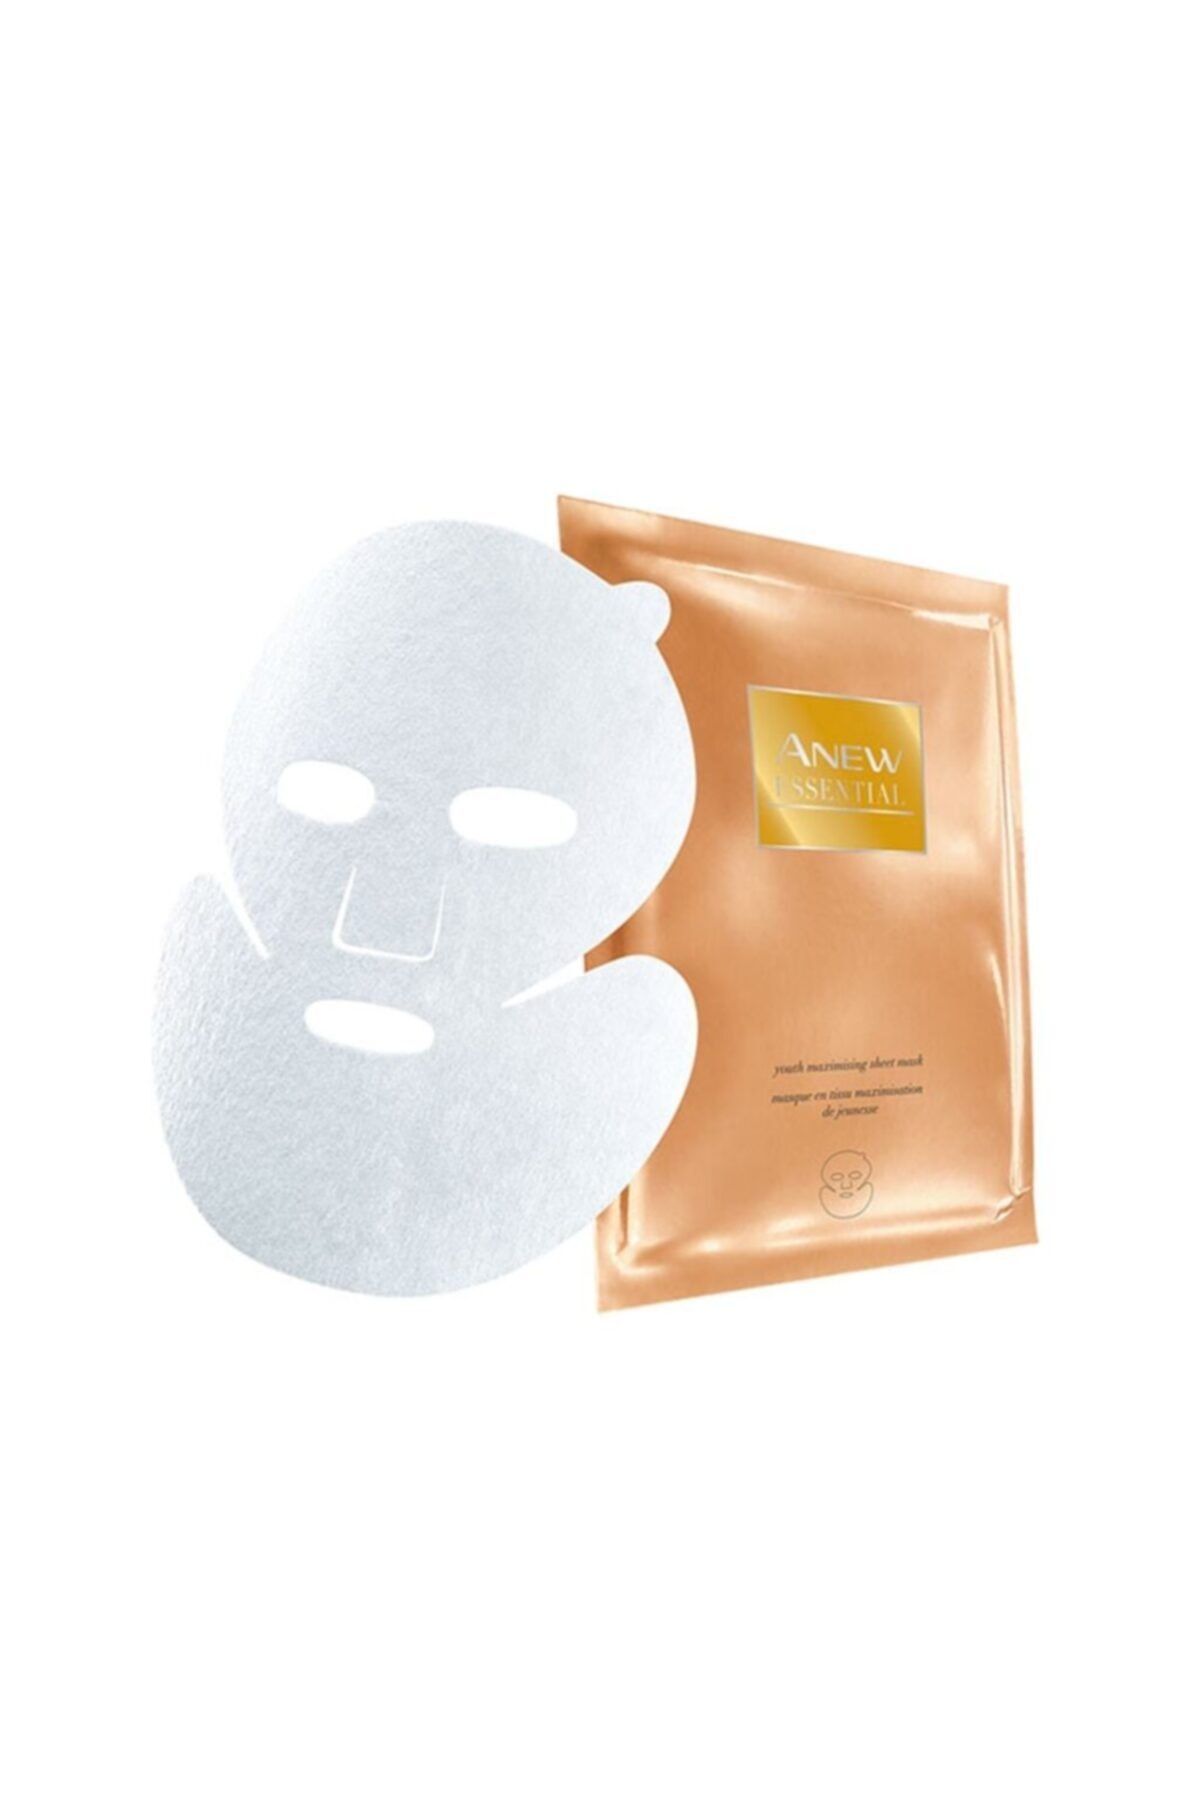 Avon Anew Cilt Görünümünü Gençleştirien Kağıt Maske